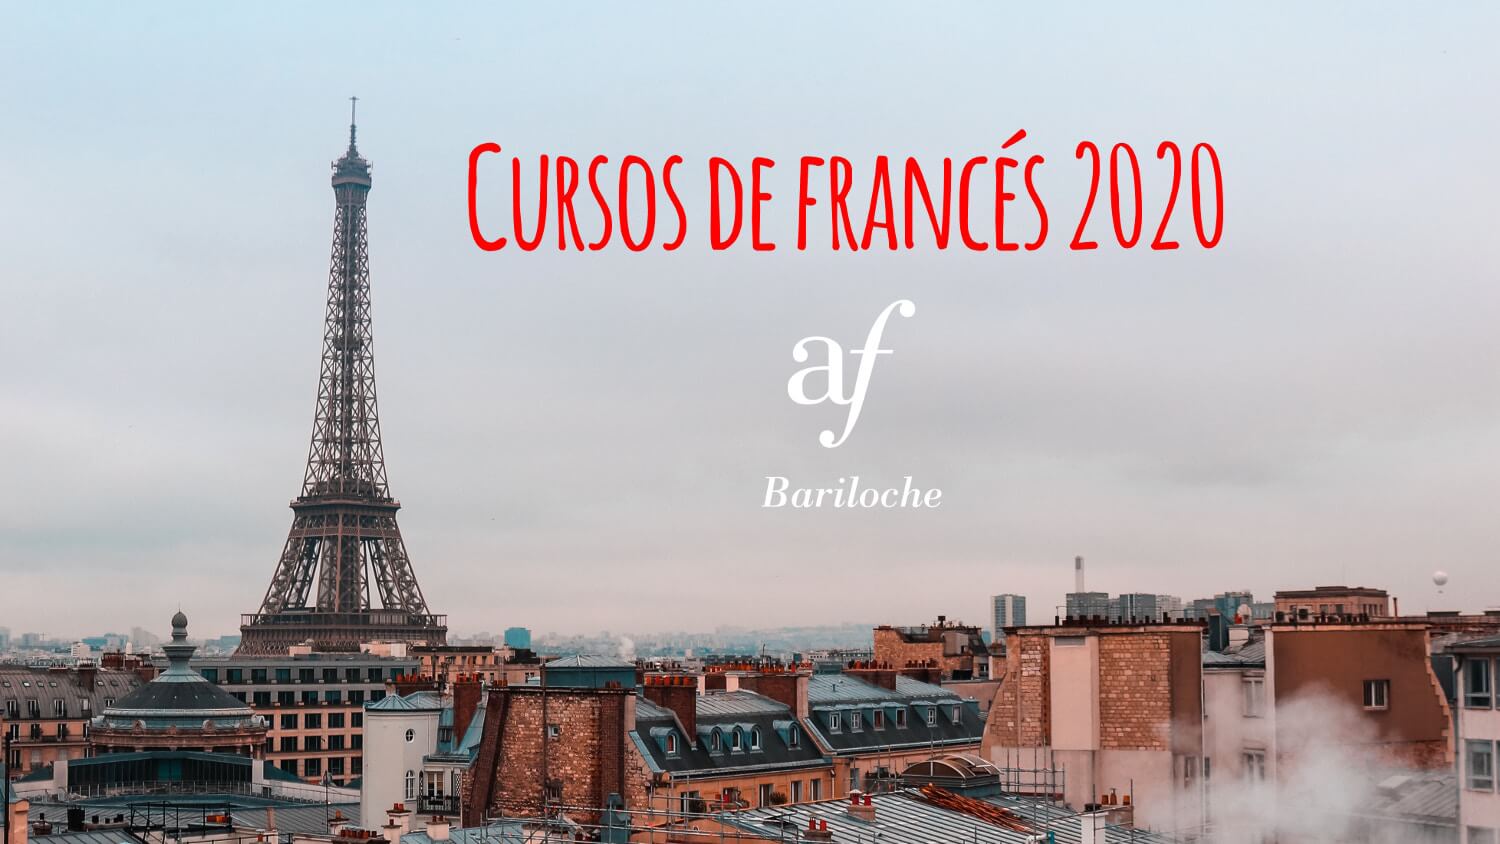 Cursos de francés 2020